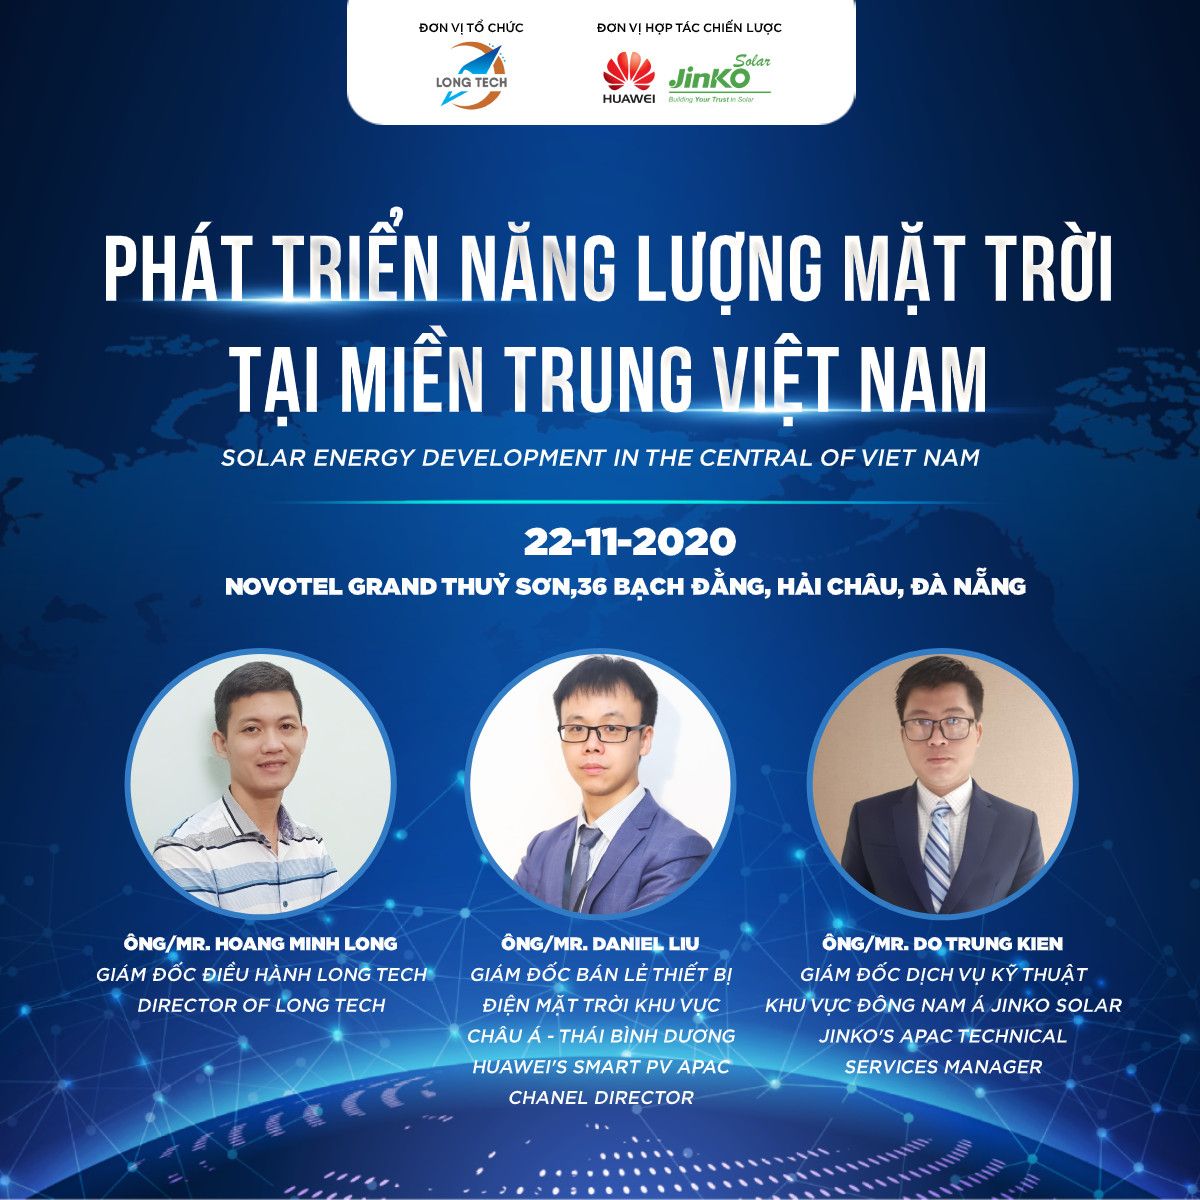 Hội thảo Phát triển Năng lượng mặt trời tại miền Trung Việt Nam: 13h30 – 17h30 ngày 22/11/2020,  Đơn vị tổ chức: Long Tech,... Huawei.  Jinko Solar